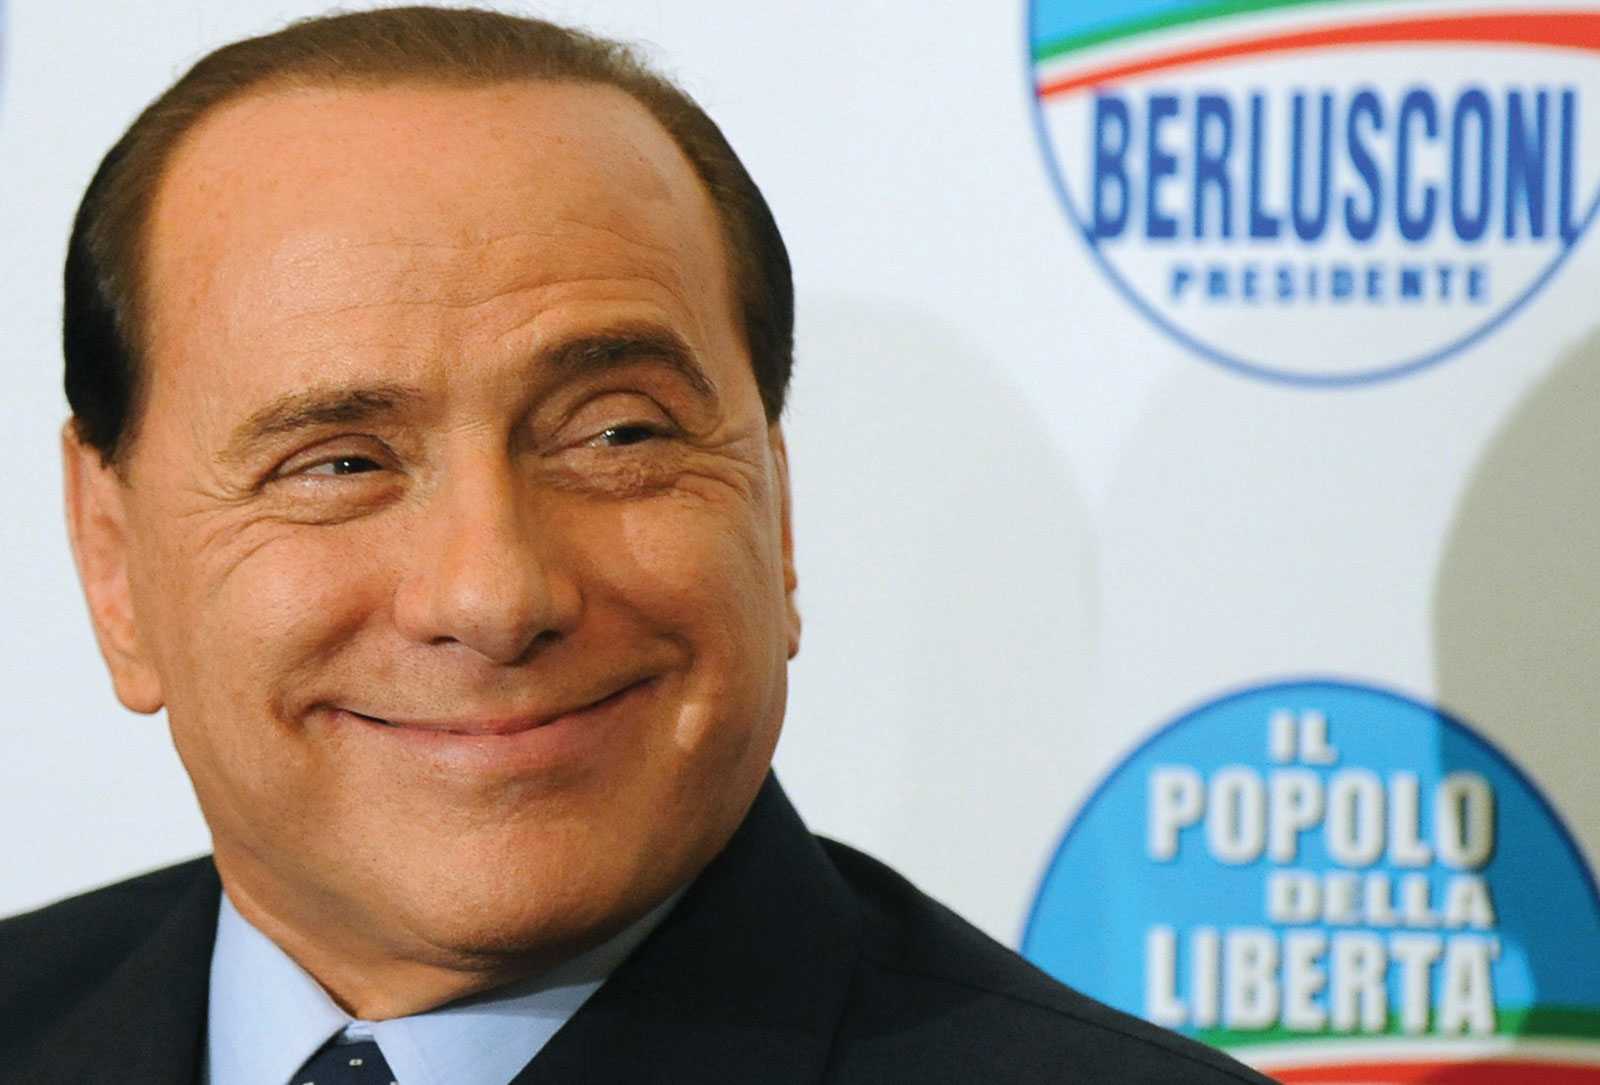 Berlusconi: "+10 punti nei sondaggi in 15 giorni". L'invito: "Italiani, andate a votare"